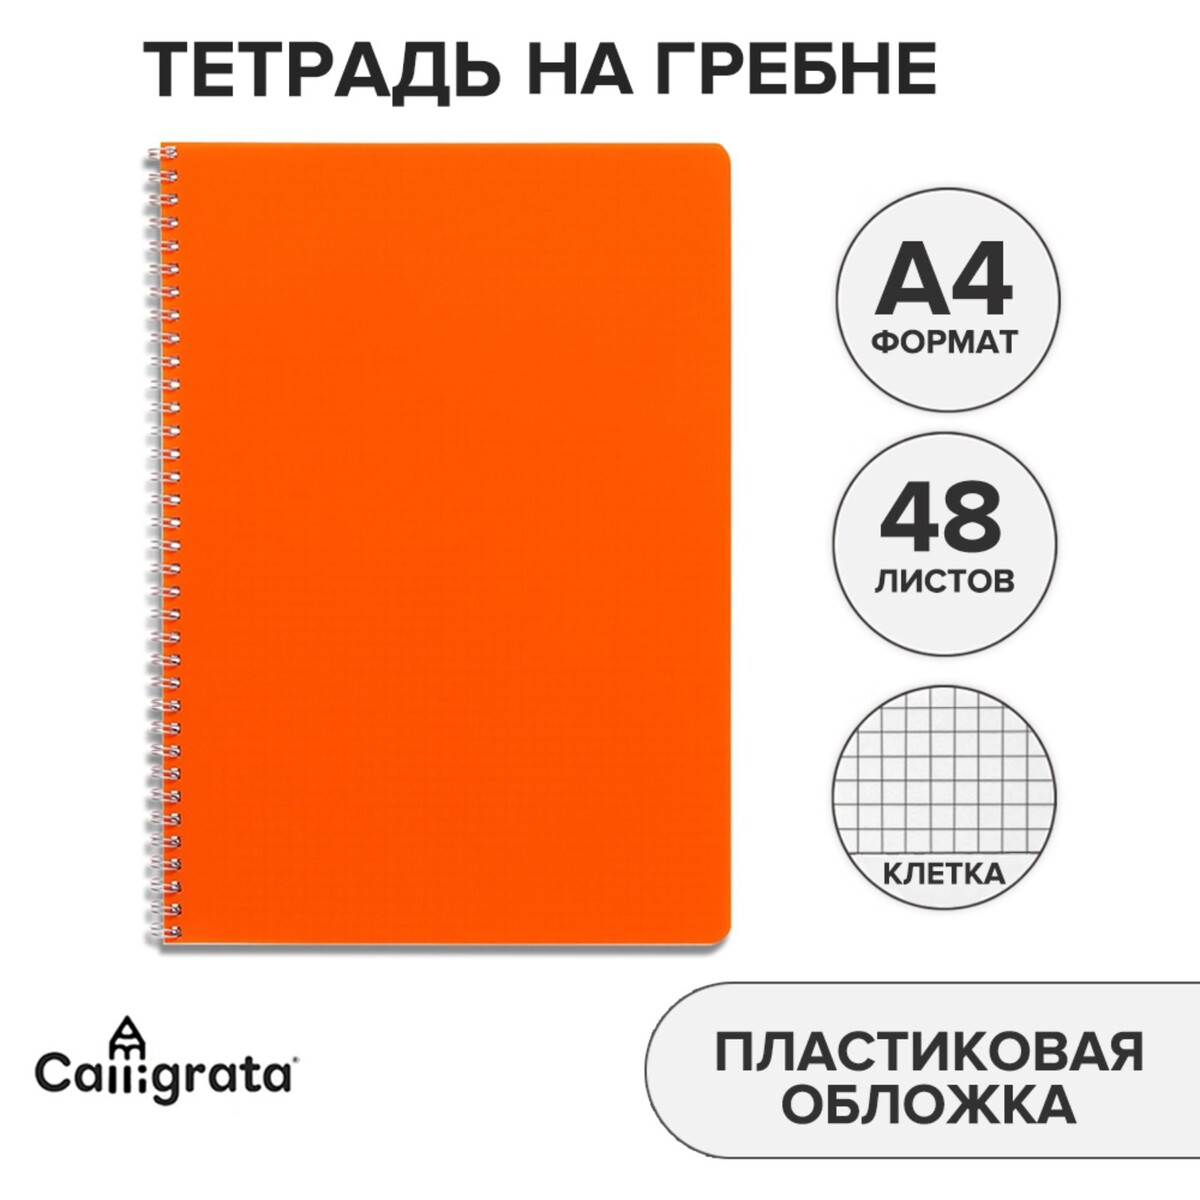 Тетрадь на гребне a4 48 листов в клетку calligrata оранжевая, пластиковая обложка, блок офсет